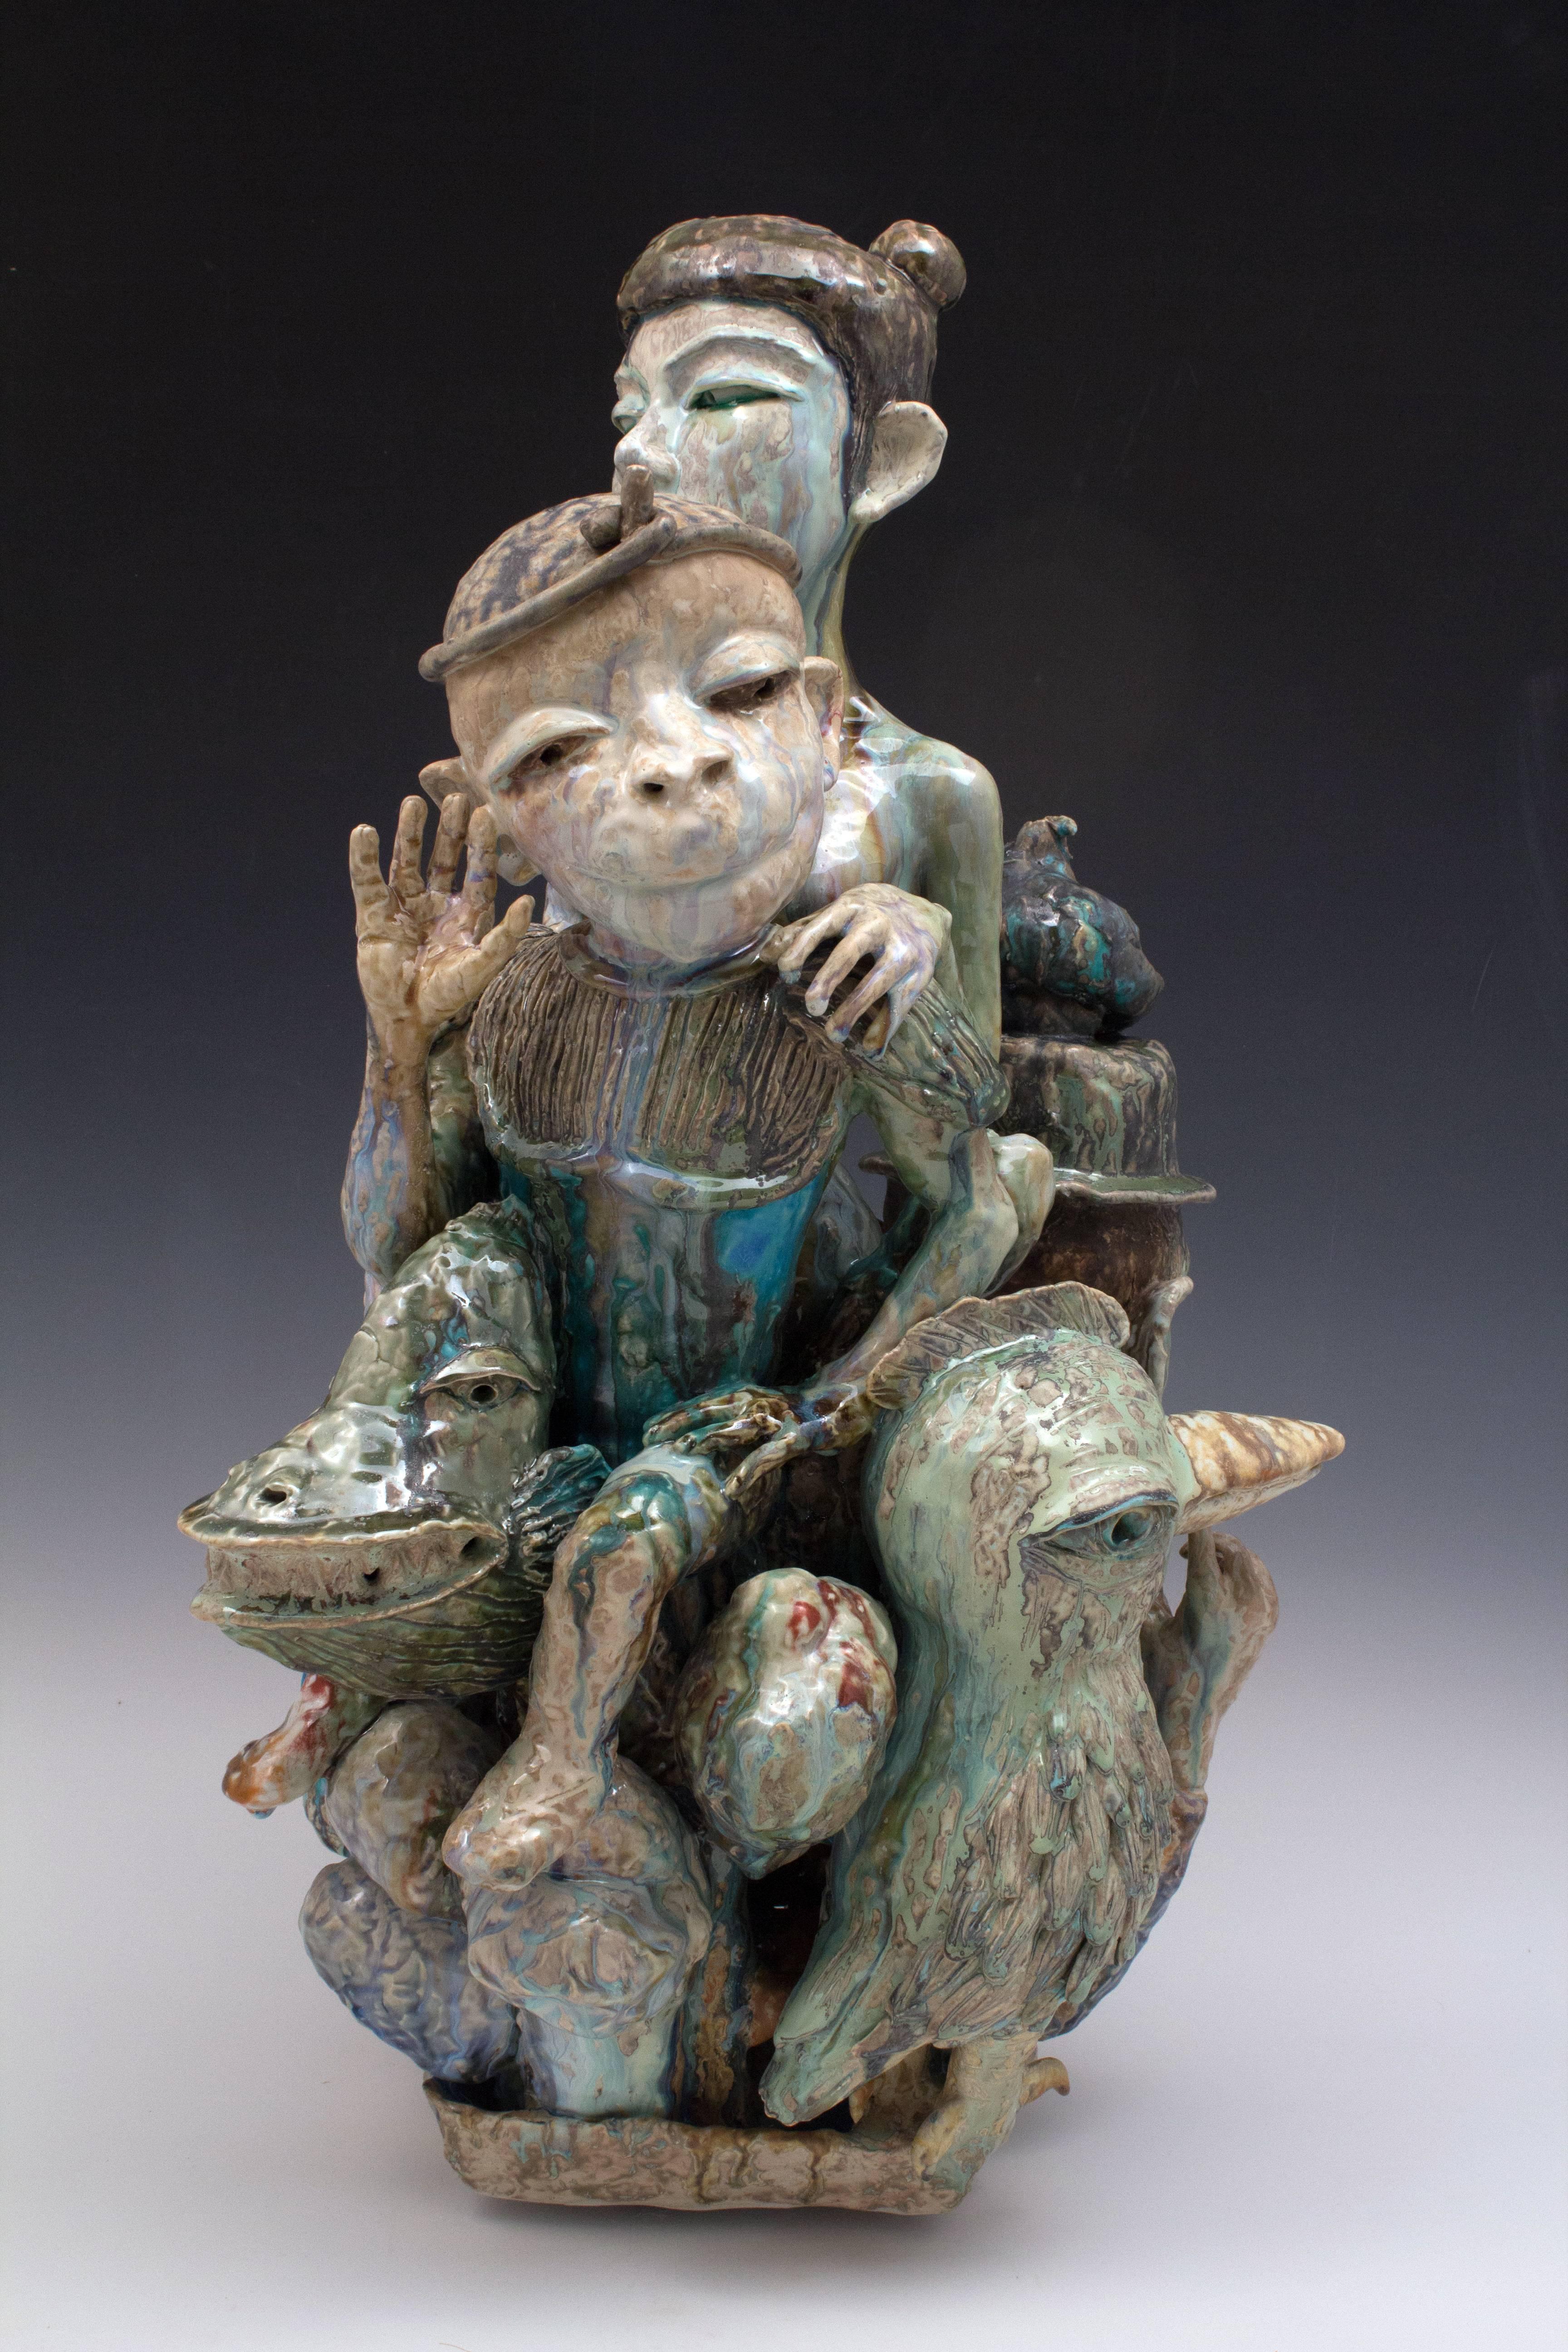 Figurative Sculpture SunKoo Yuh - "Année du singe", sculpture figurative en porcelaine avec glaçure colorée